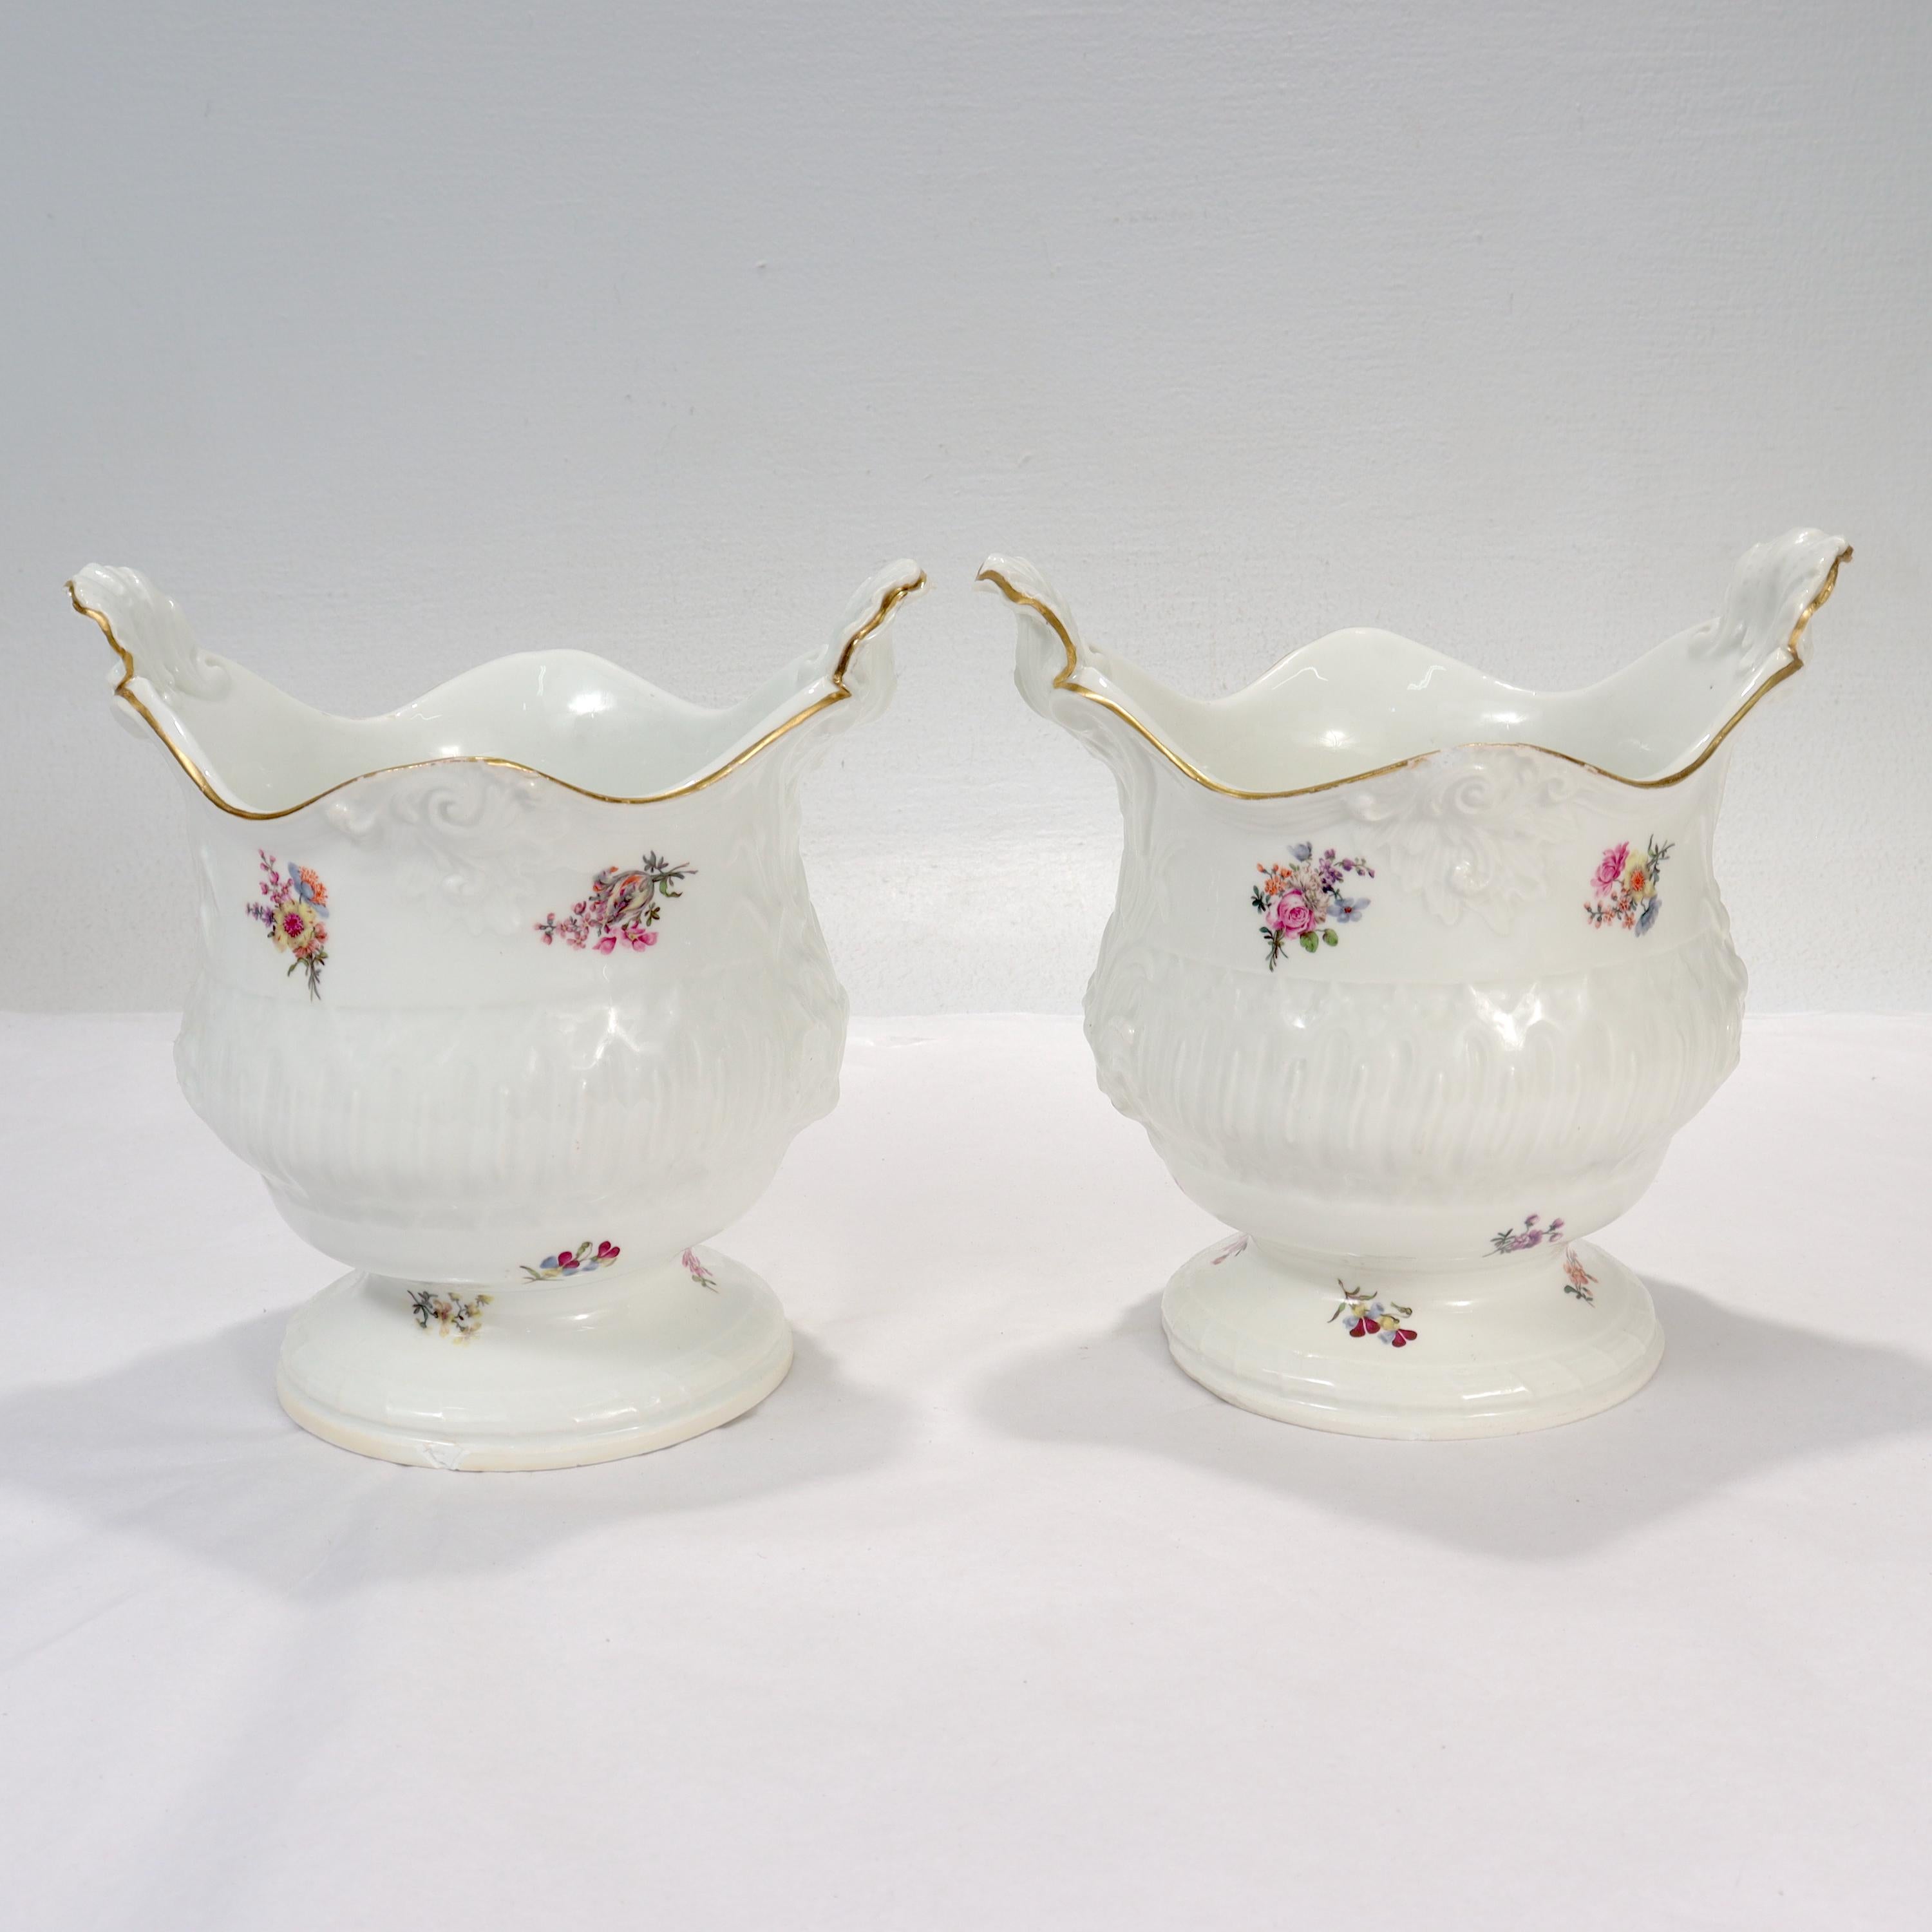 Pair of Antique 18th / 19th Century Meissen Porcelain Cachepots or Flower Pots For Sale 1